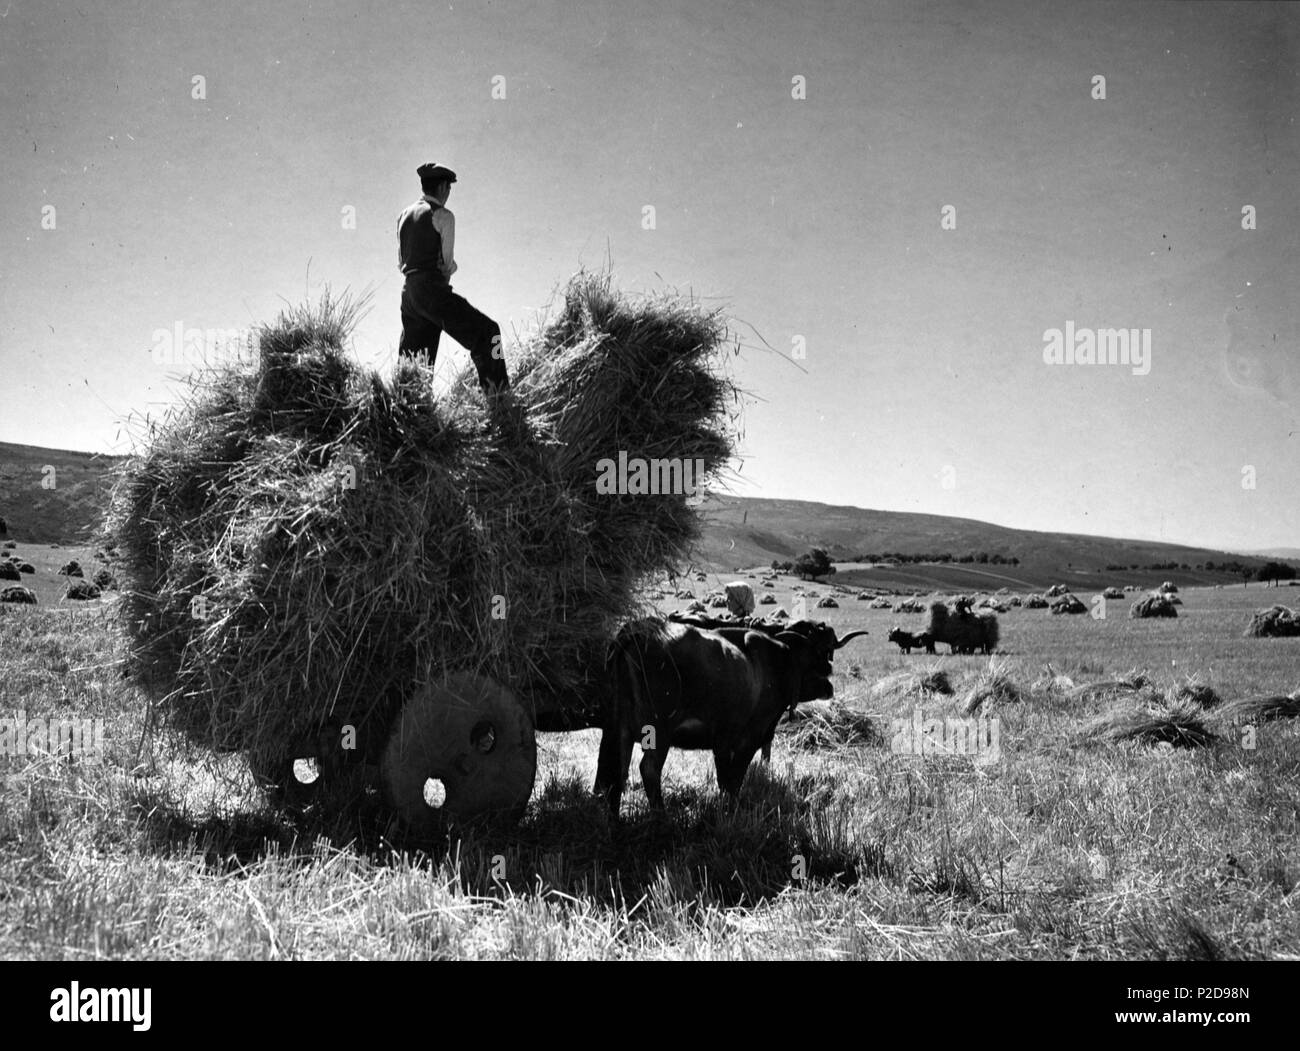 Trabajadores cargando gavillas. Zamora, años 50. Stock Photo